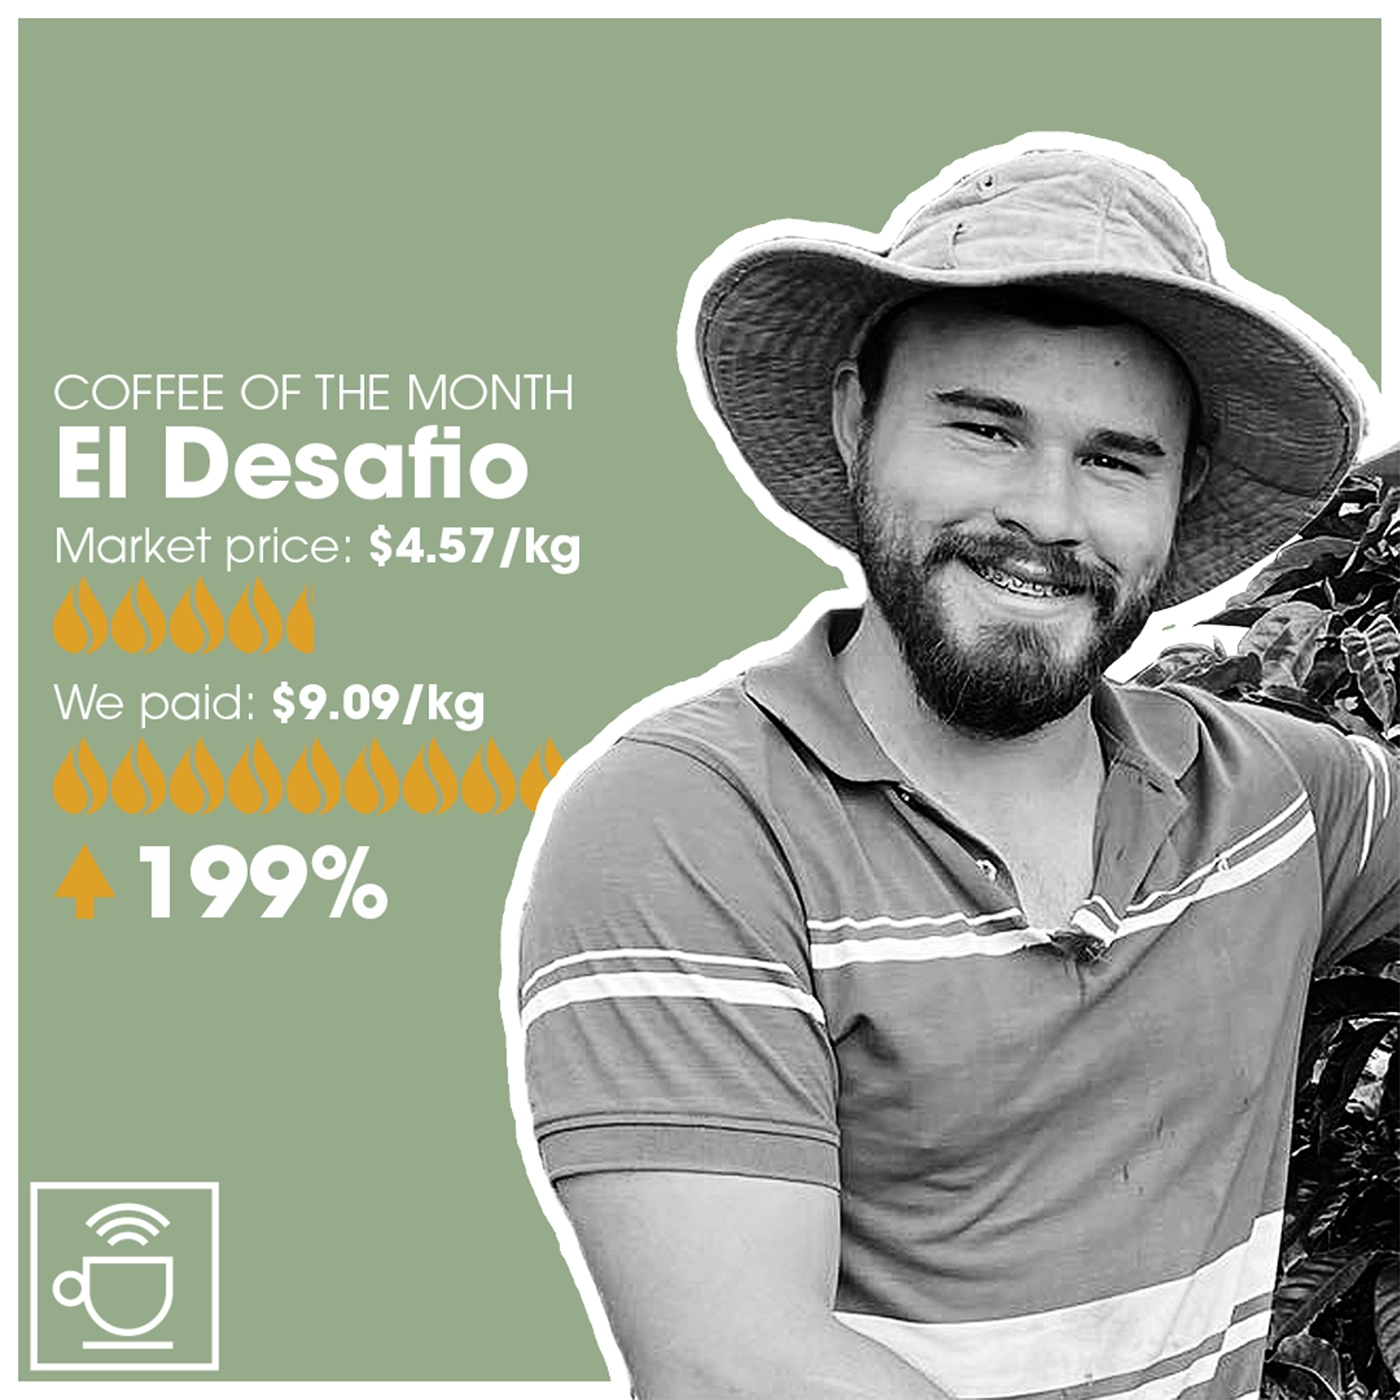 månedens kaffe, el desafio, markedpris $4,57/kg, CleverCoffee har betalt $9.09/kg, 199% over markedsprisen 